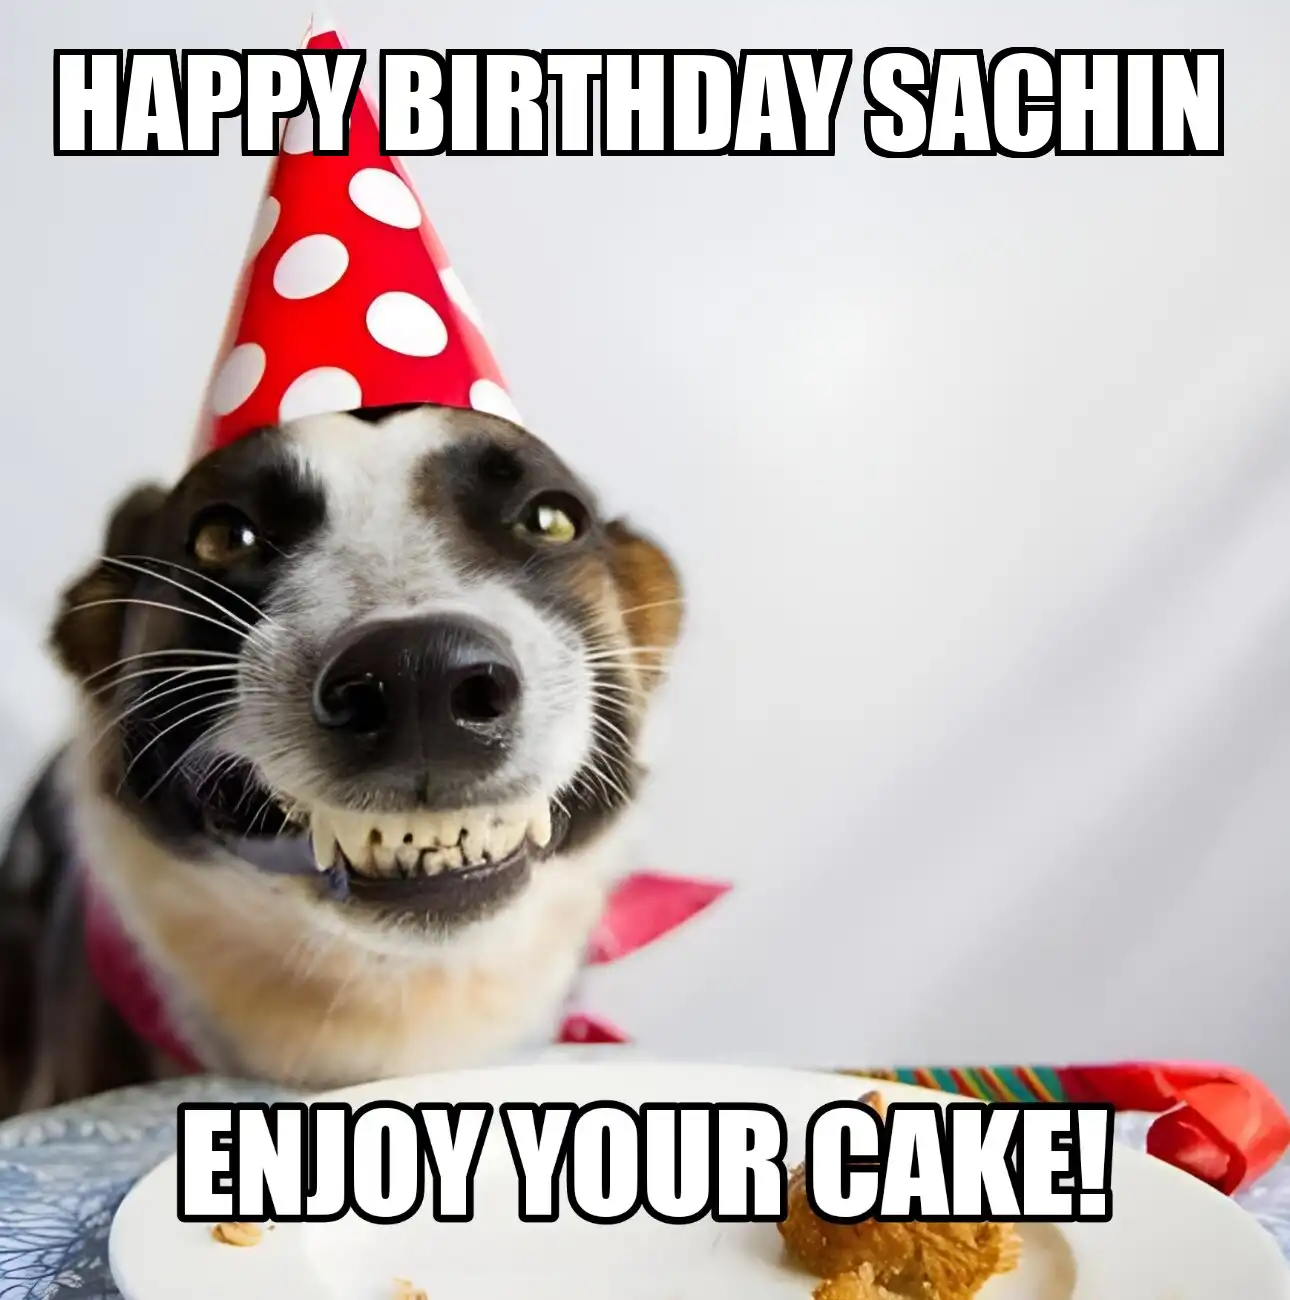 Happy Birthday Sachin Enjoy Your Cake Dog Meme